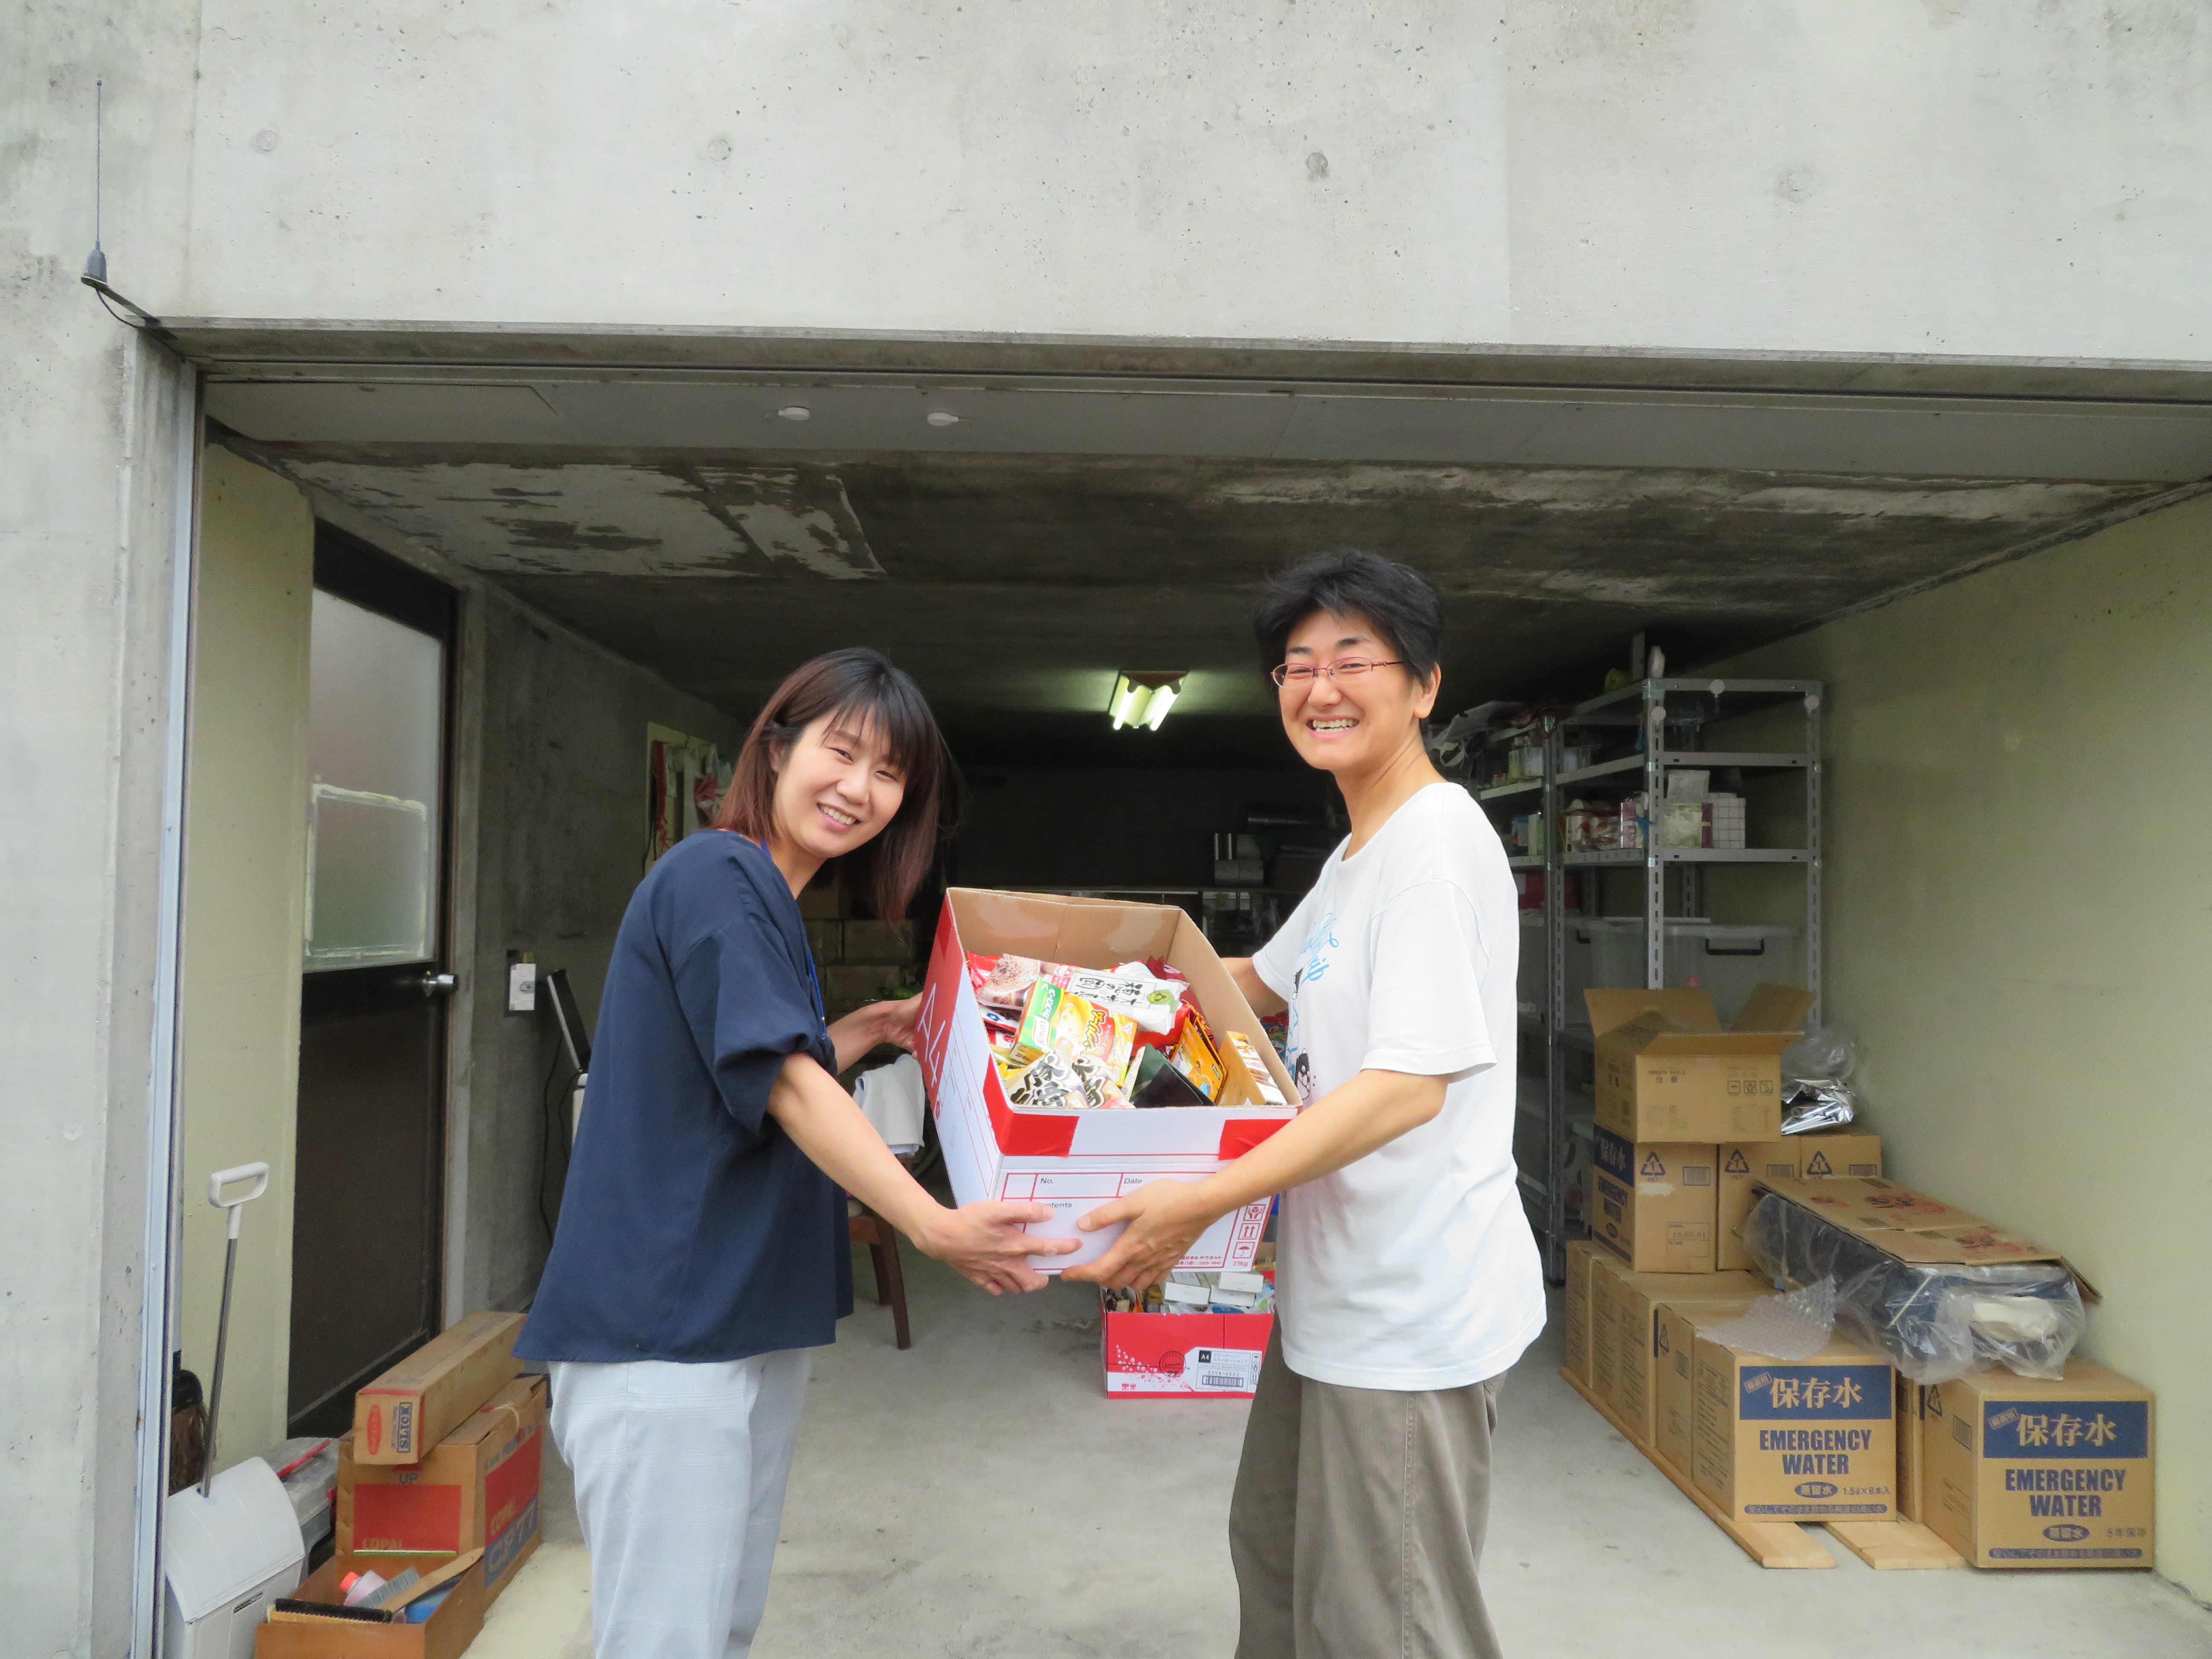 ボランタイム（食品の収集活動）で、市民の方からお預かりした食品をボランティアグループ「フードバンクかすがい」へお届けする様子 (2).JPG